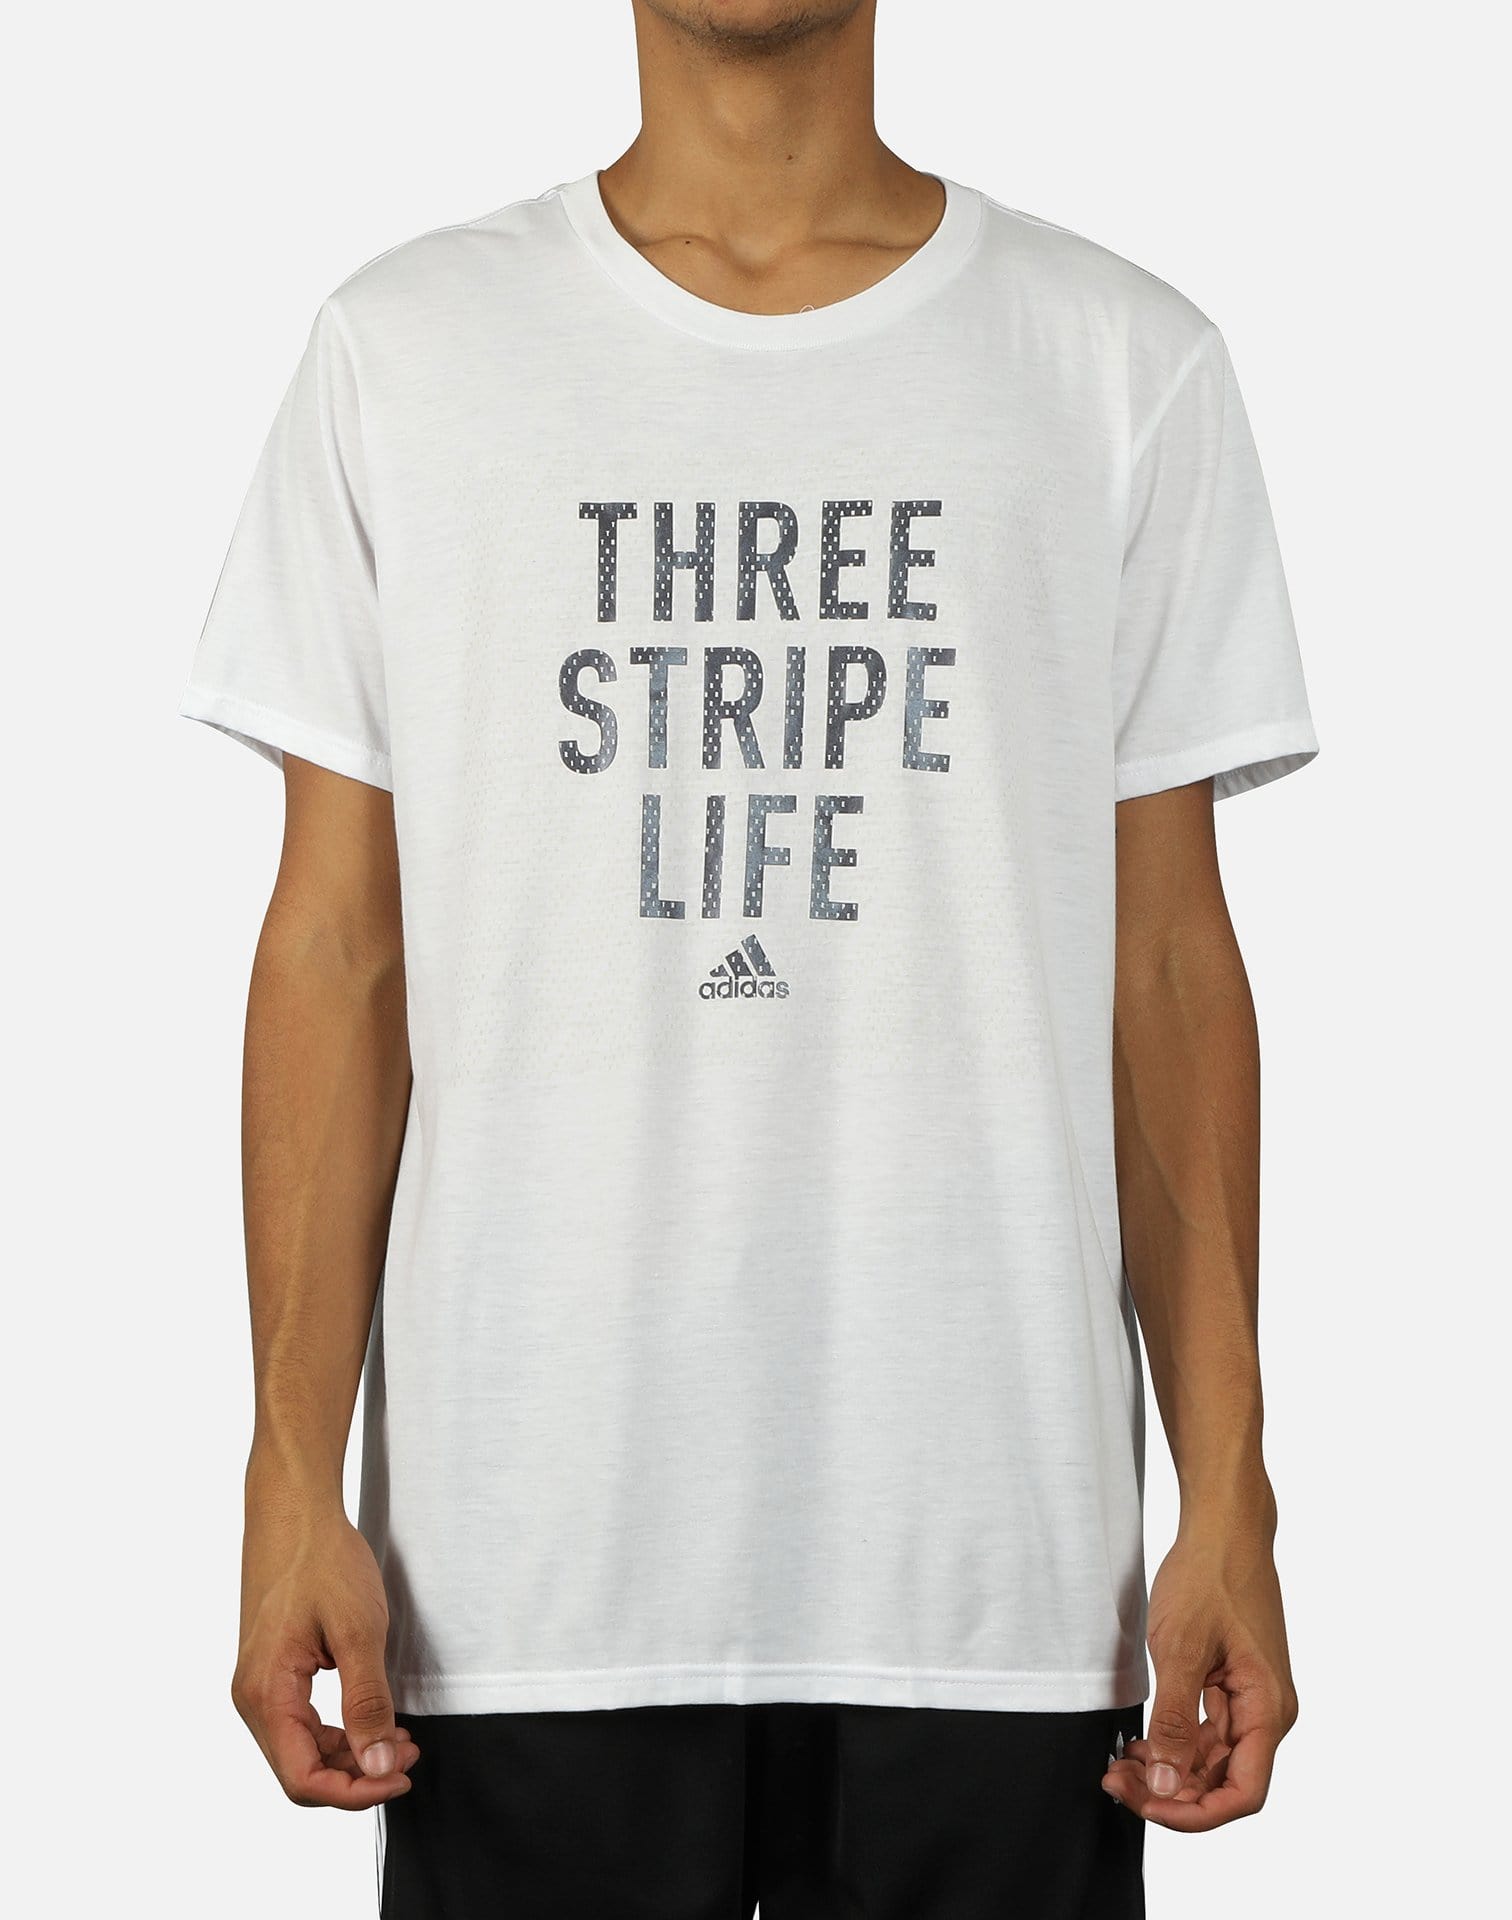 adidas three stripes life